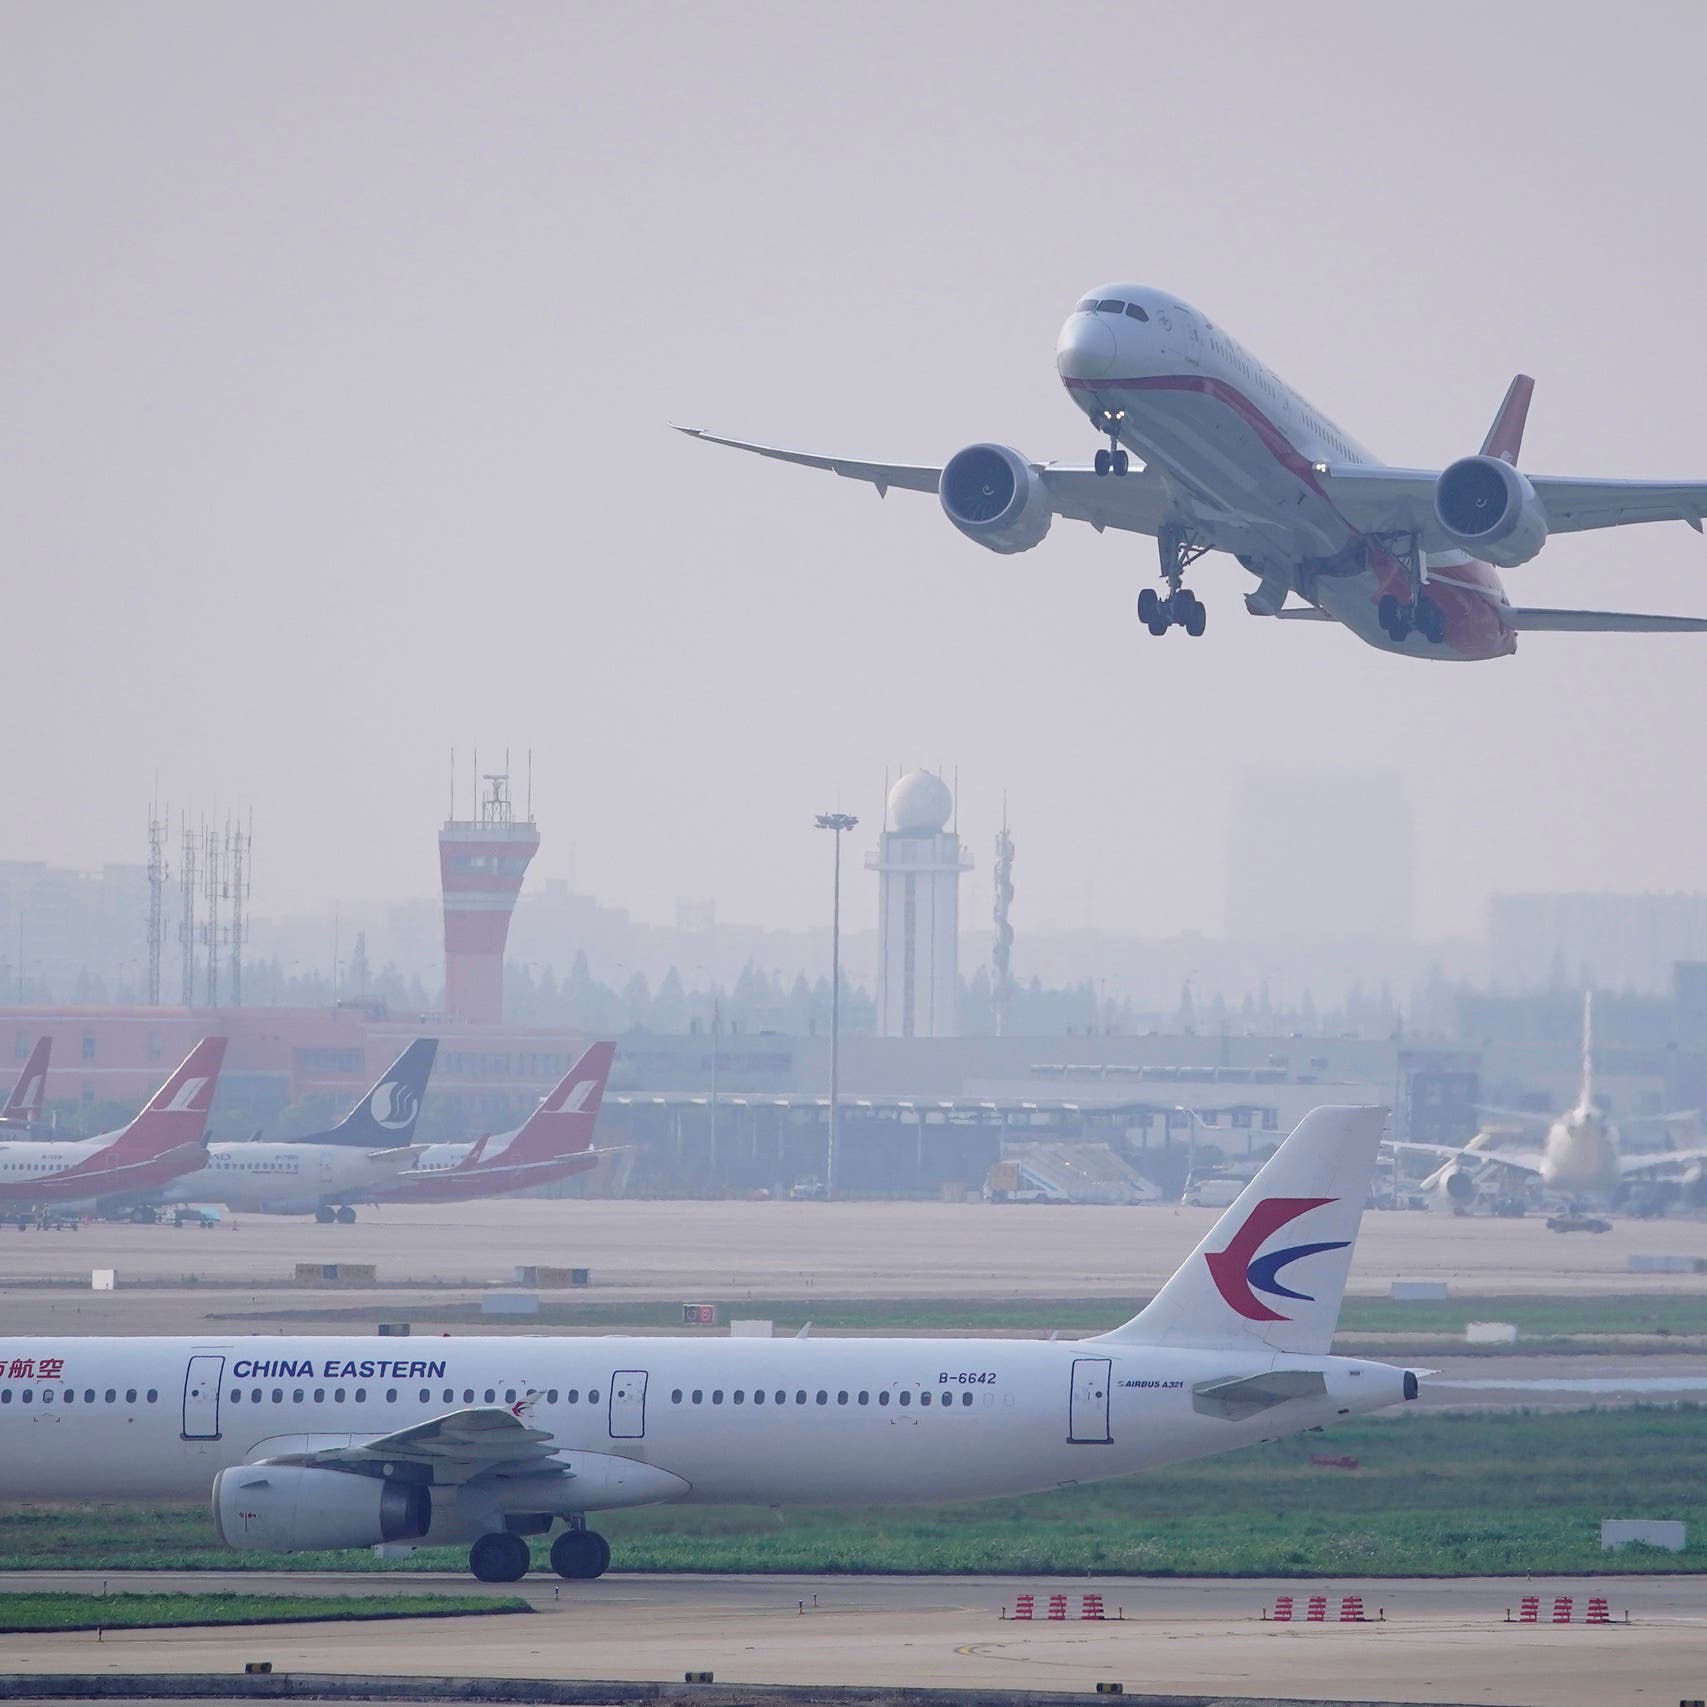 تعطل حركة السفر الجوي في الصين بعد حادث طائرة مأساوي